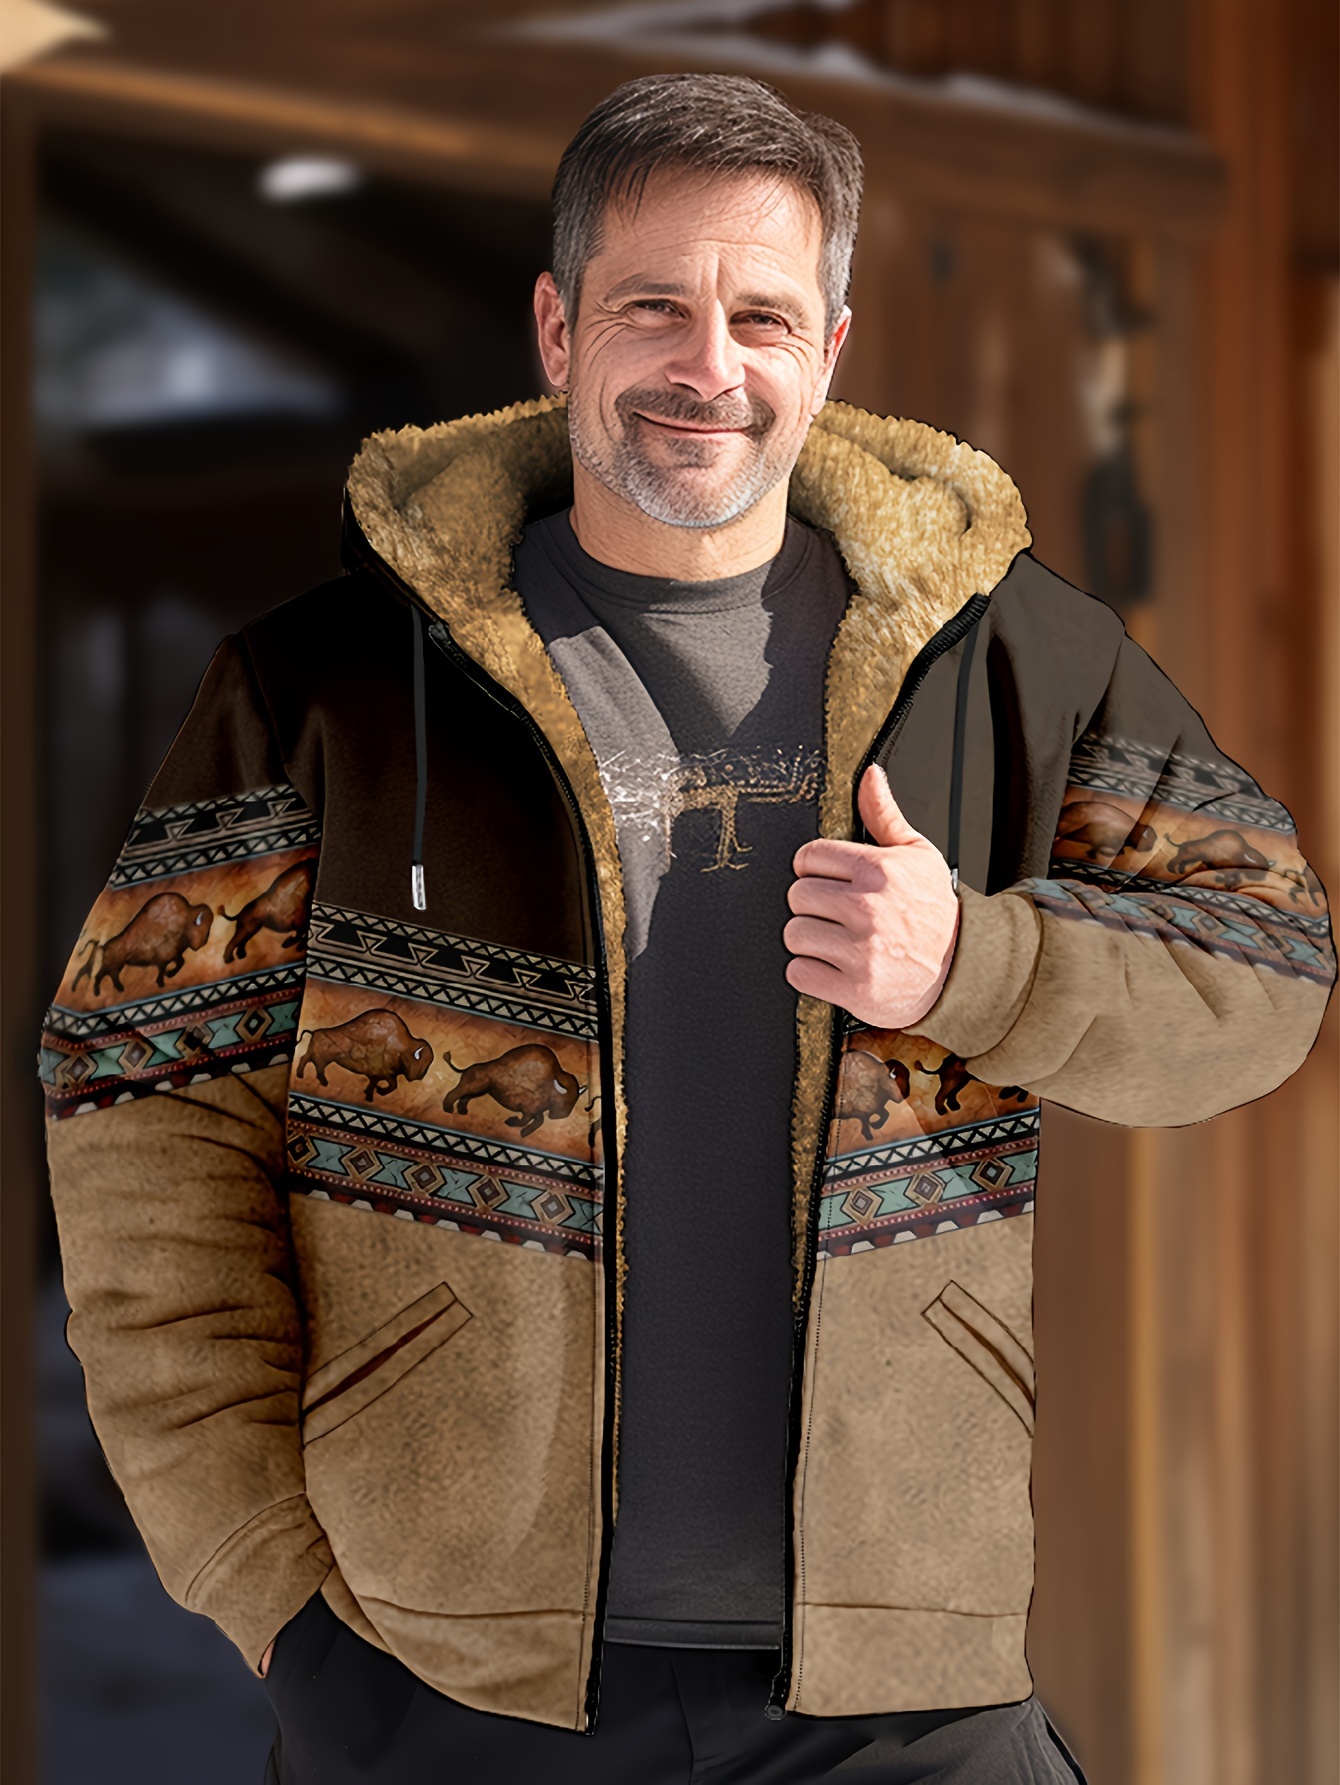 Mens Fleece Jacket: Cozy Fleece Edition